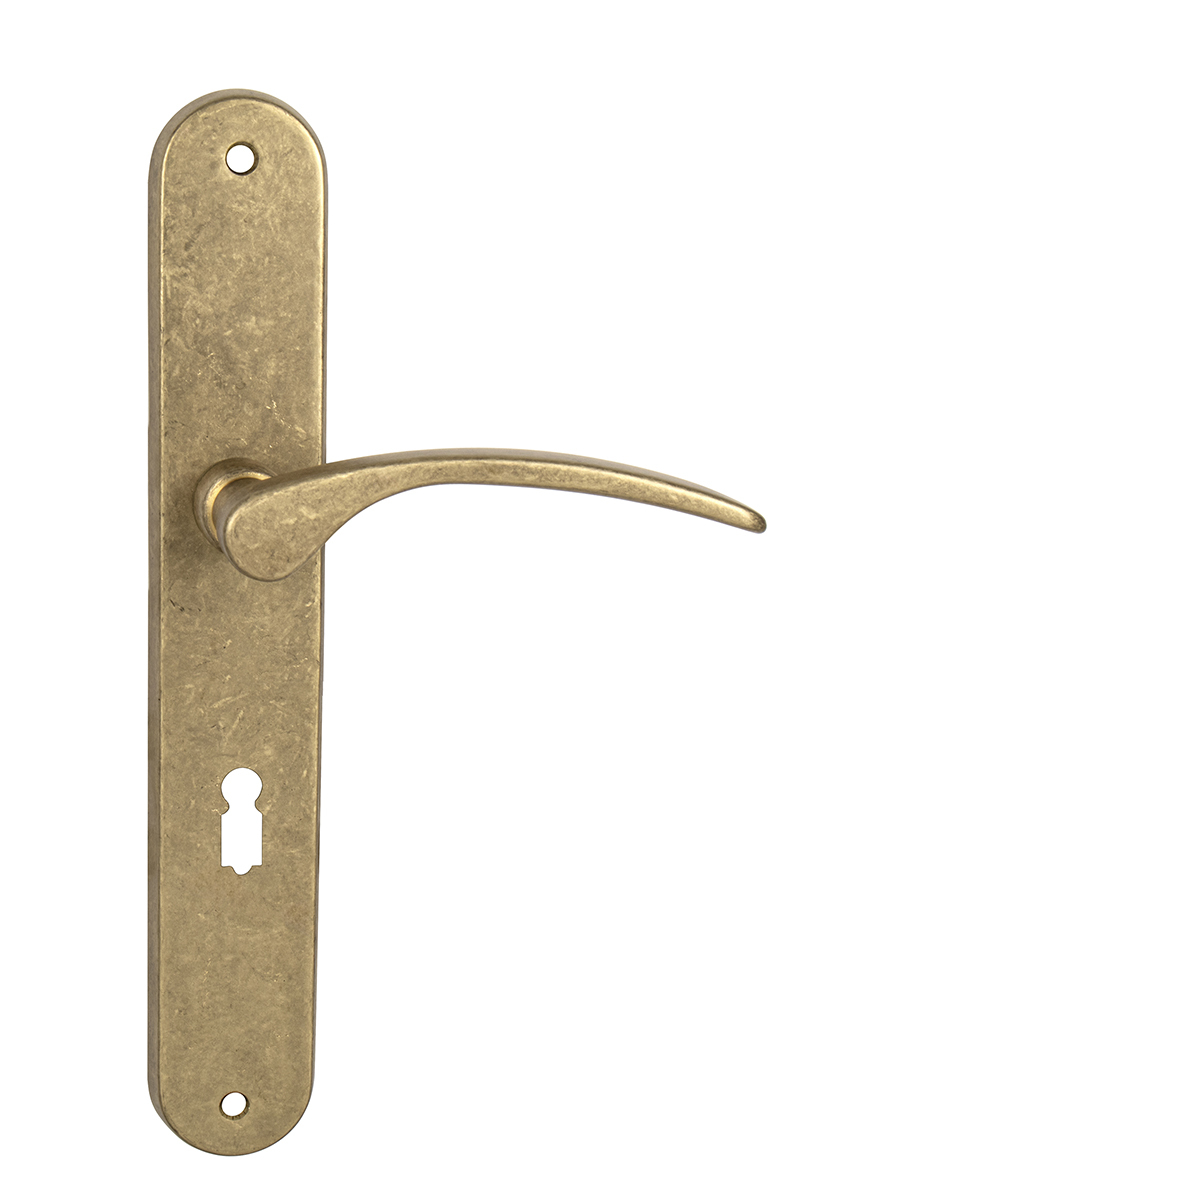 MP - LAURA - SO BB otvor pre kľúč, 72 mm, kľučka/kľučka